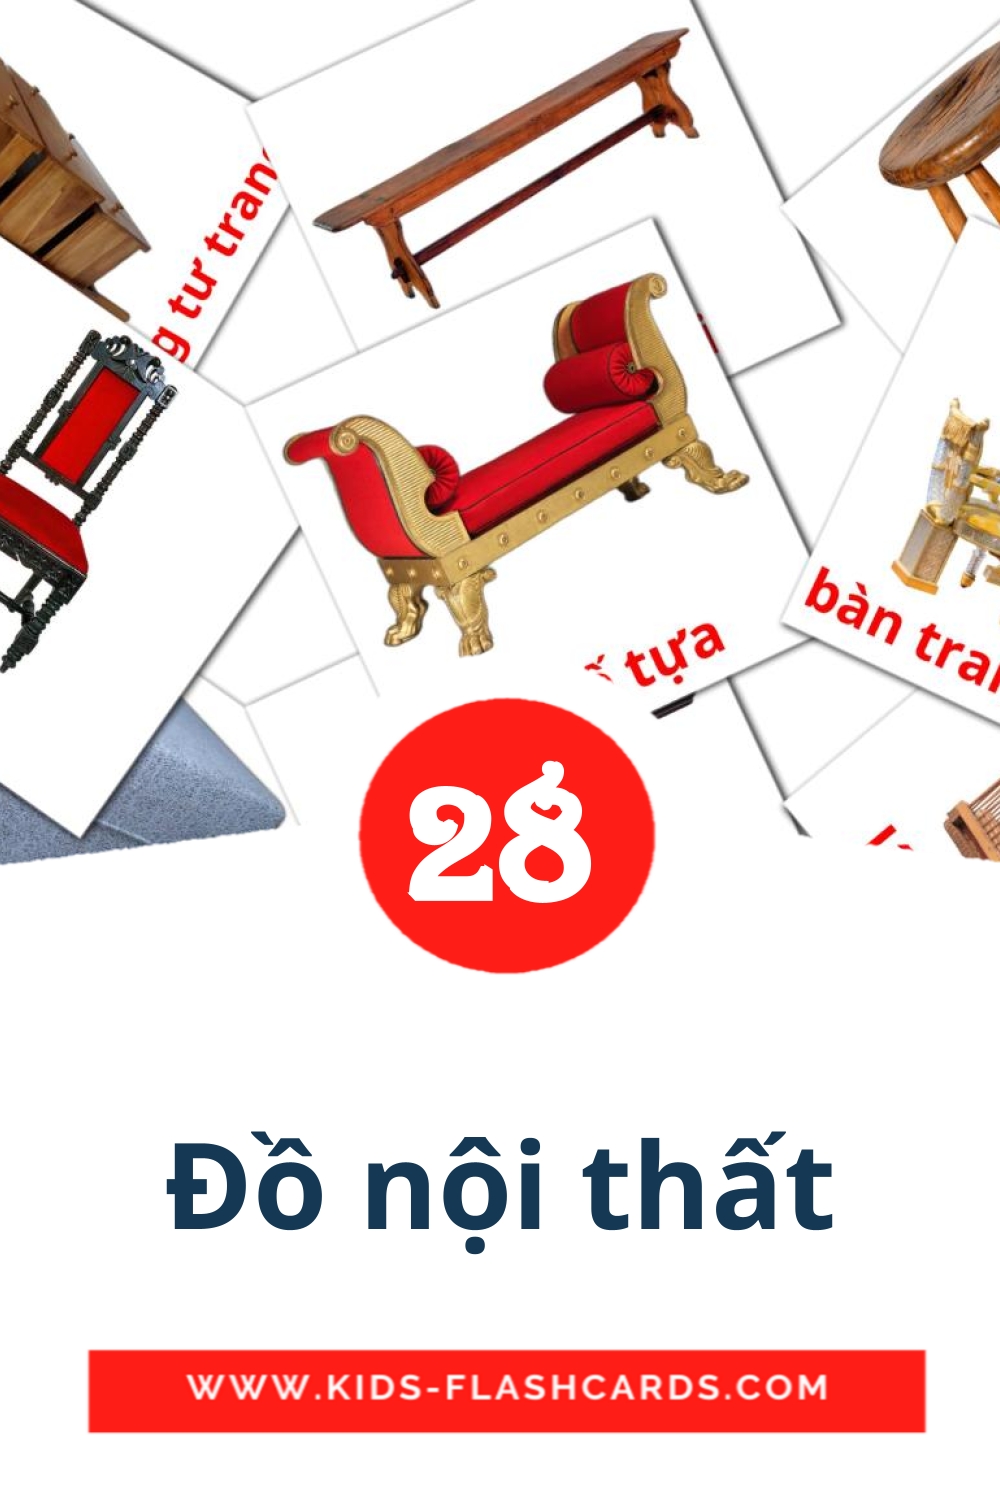 28 carte illustrate di Đồ nội thất per la scuola materna in vietnamita